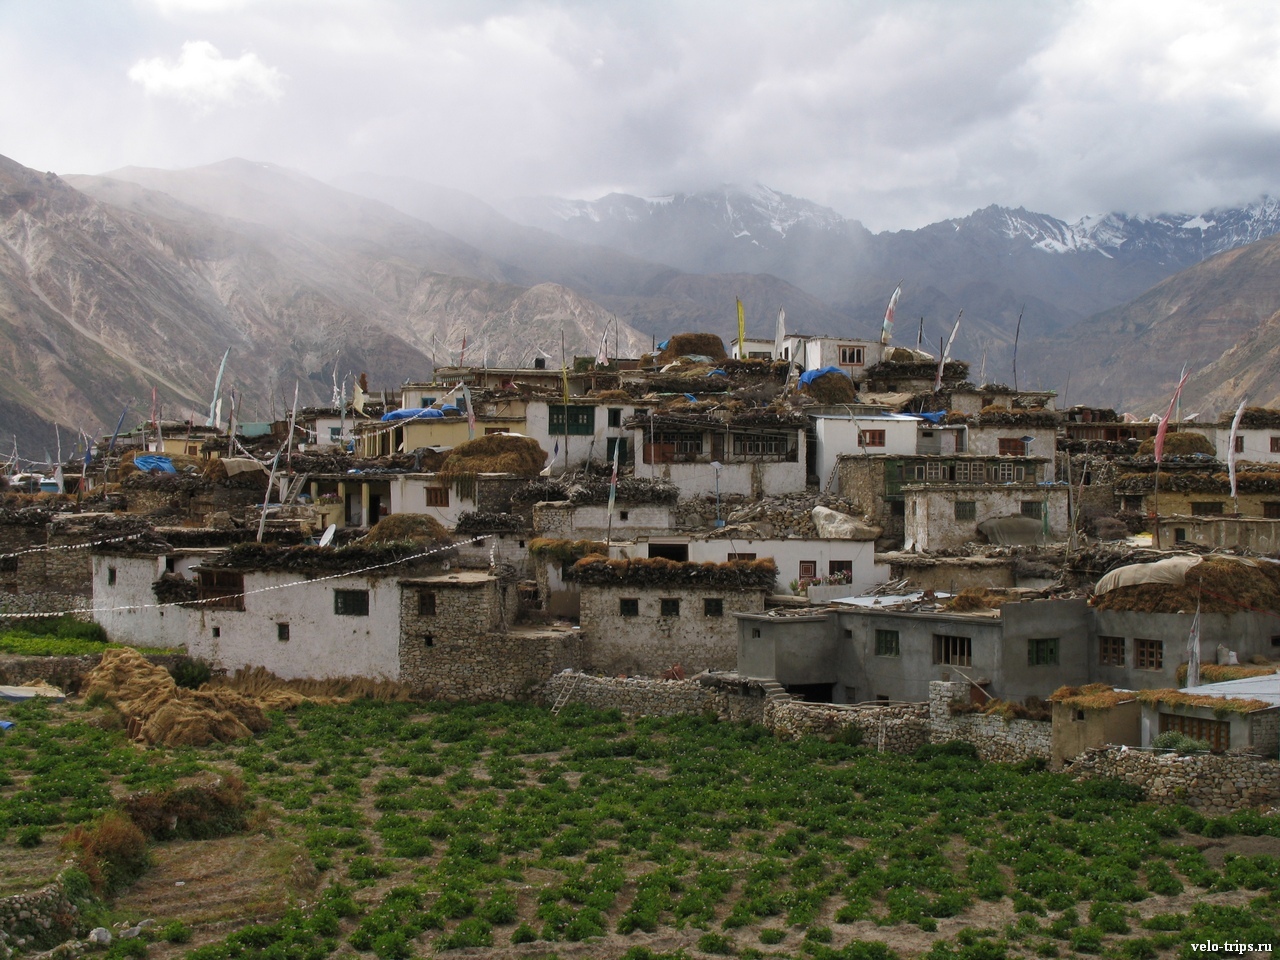 Himalaya village